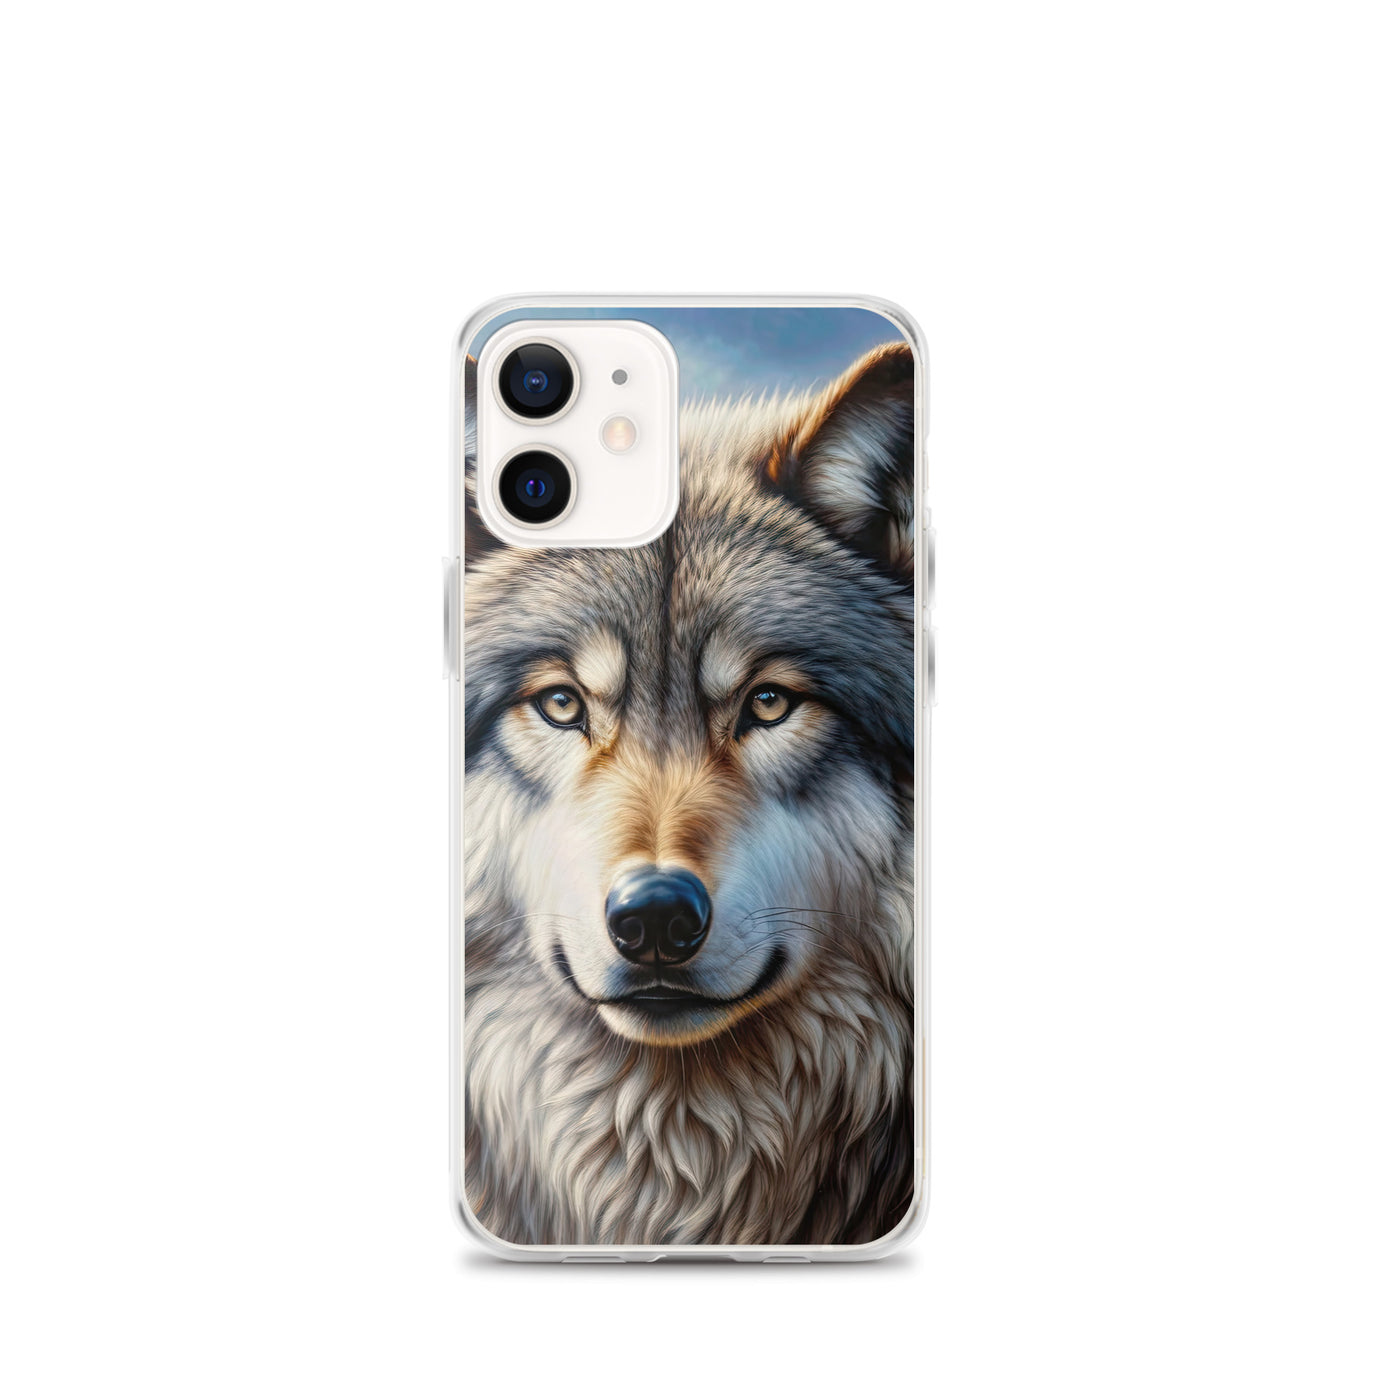 Porträt-Ölgemälde eines prächtigen Wolfes mit faszinierenden Augen (AN) - iPhone Schutzhülle (durchsichtig) xxx yyy zzz iPhone 12 mini